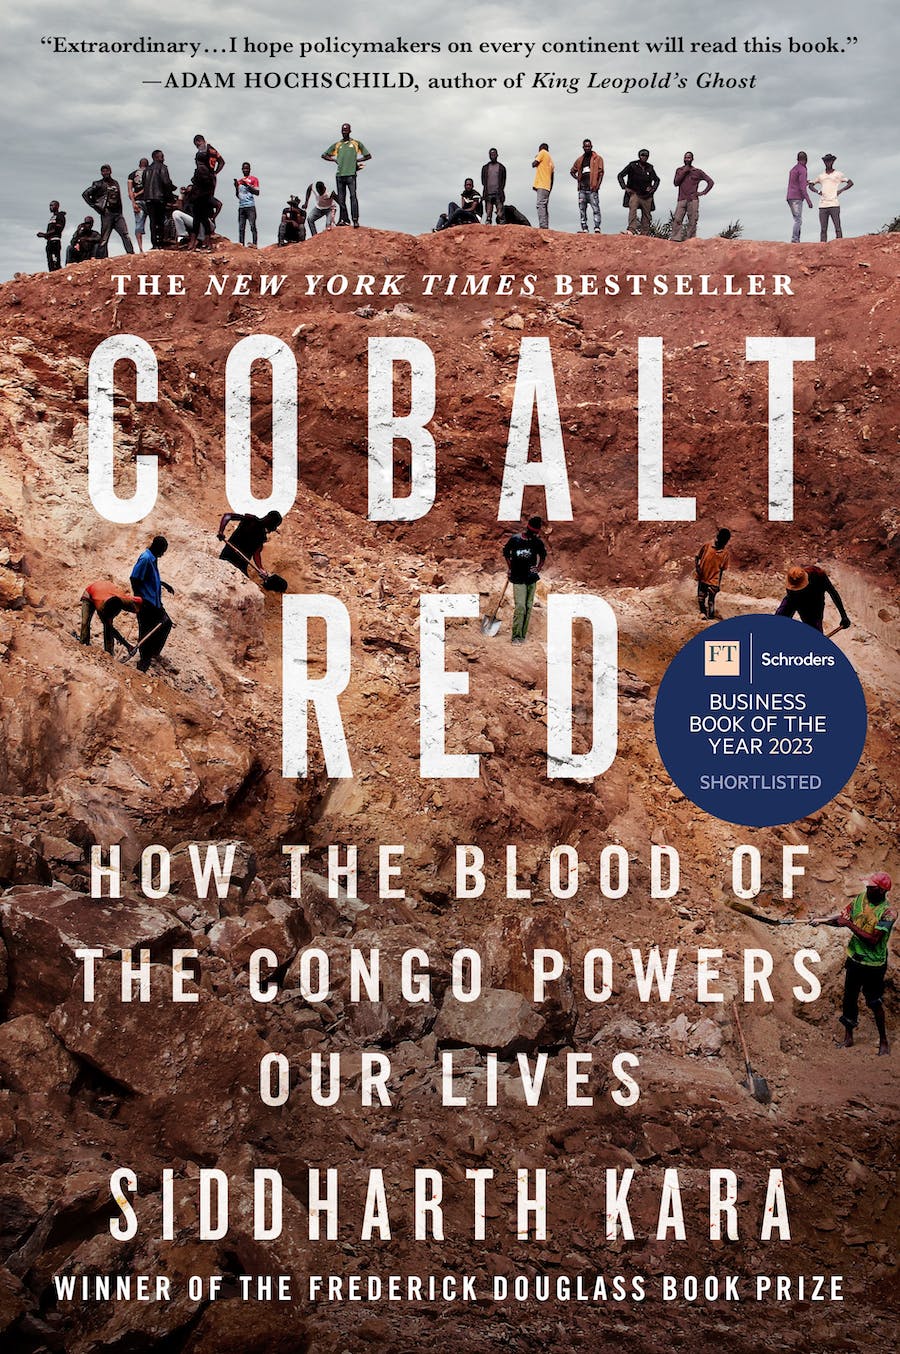 Cobalt Red (2022, St. Martin's Press)